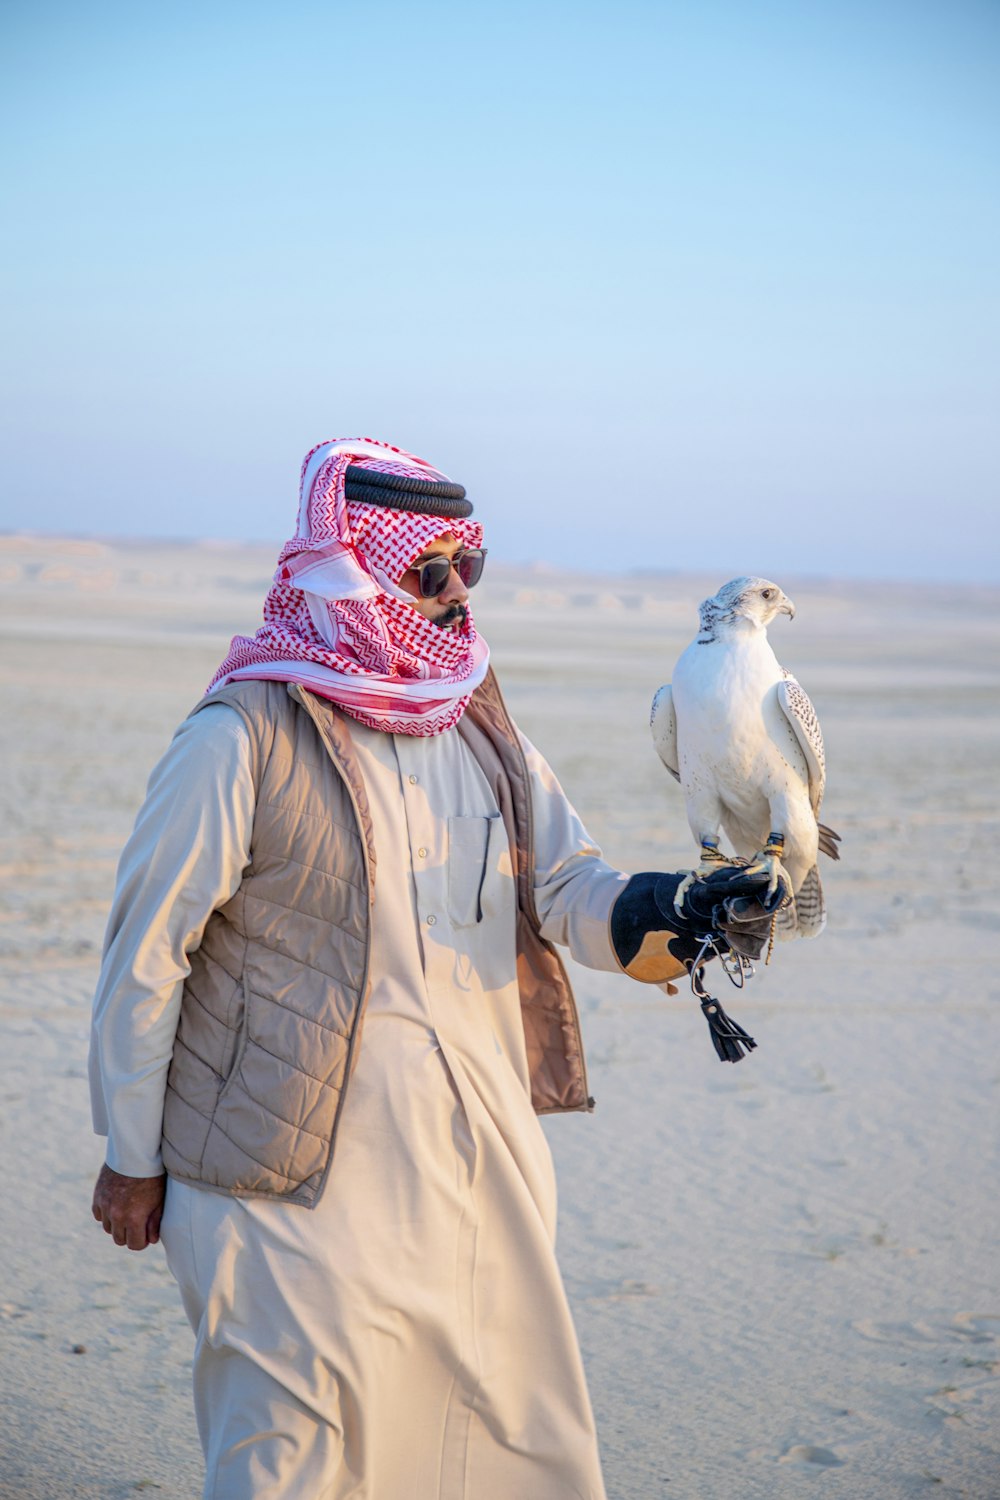 a man in a desert holding a bird